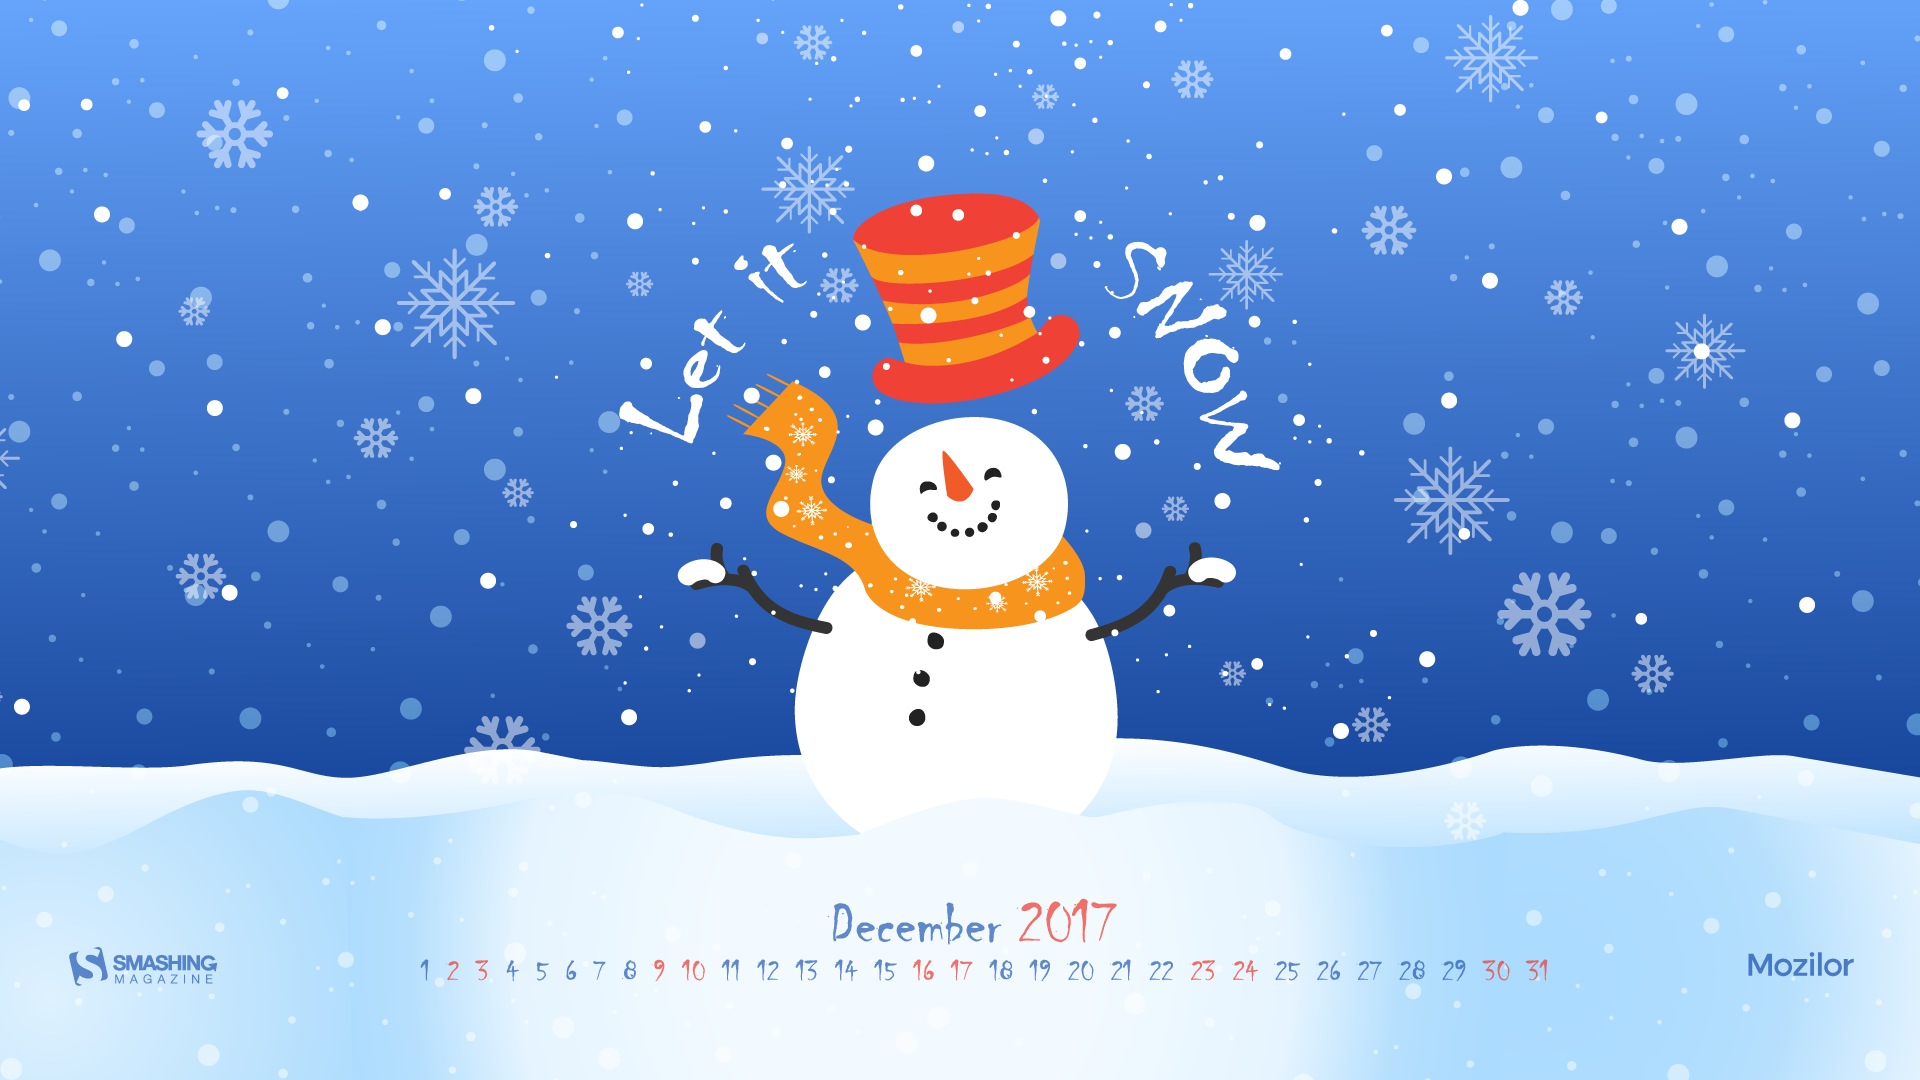 december-2017-calendar-wallpaper-16-1920x1080-wallpaper-download-december-2017-calendar